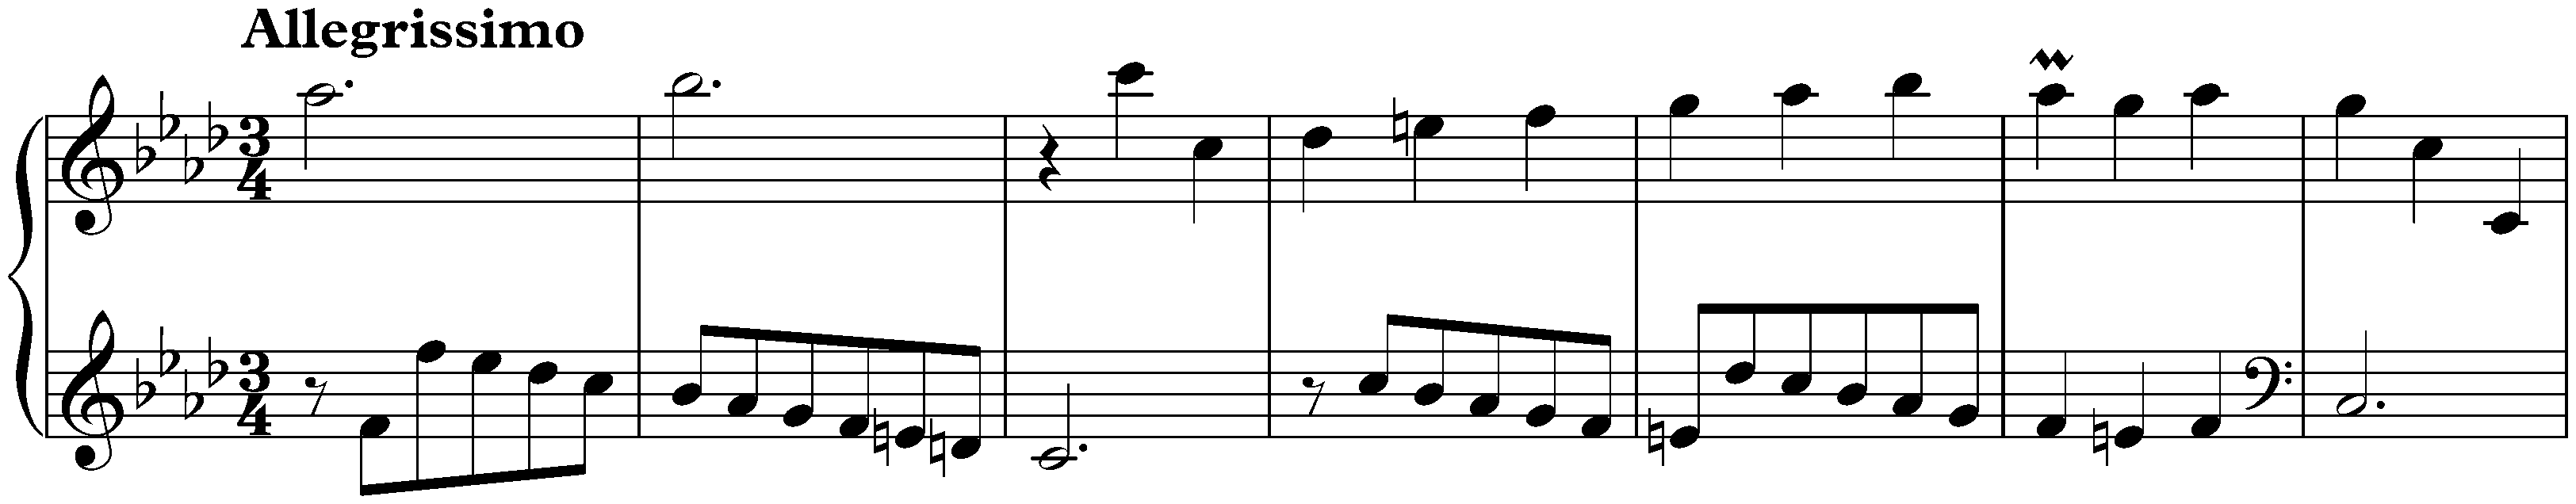 Sonata in F minor, K. 467